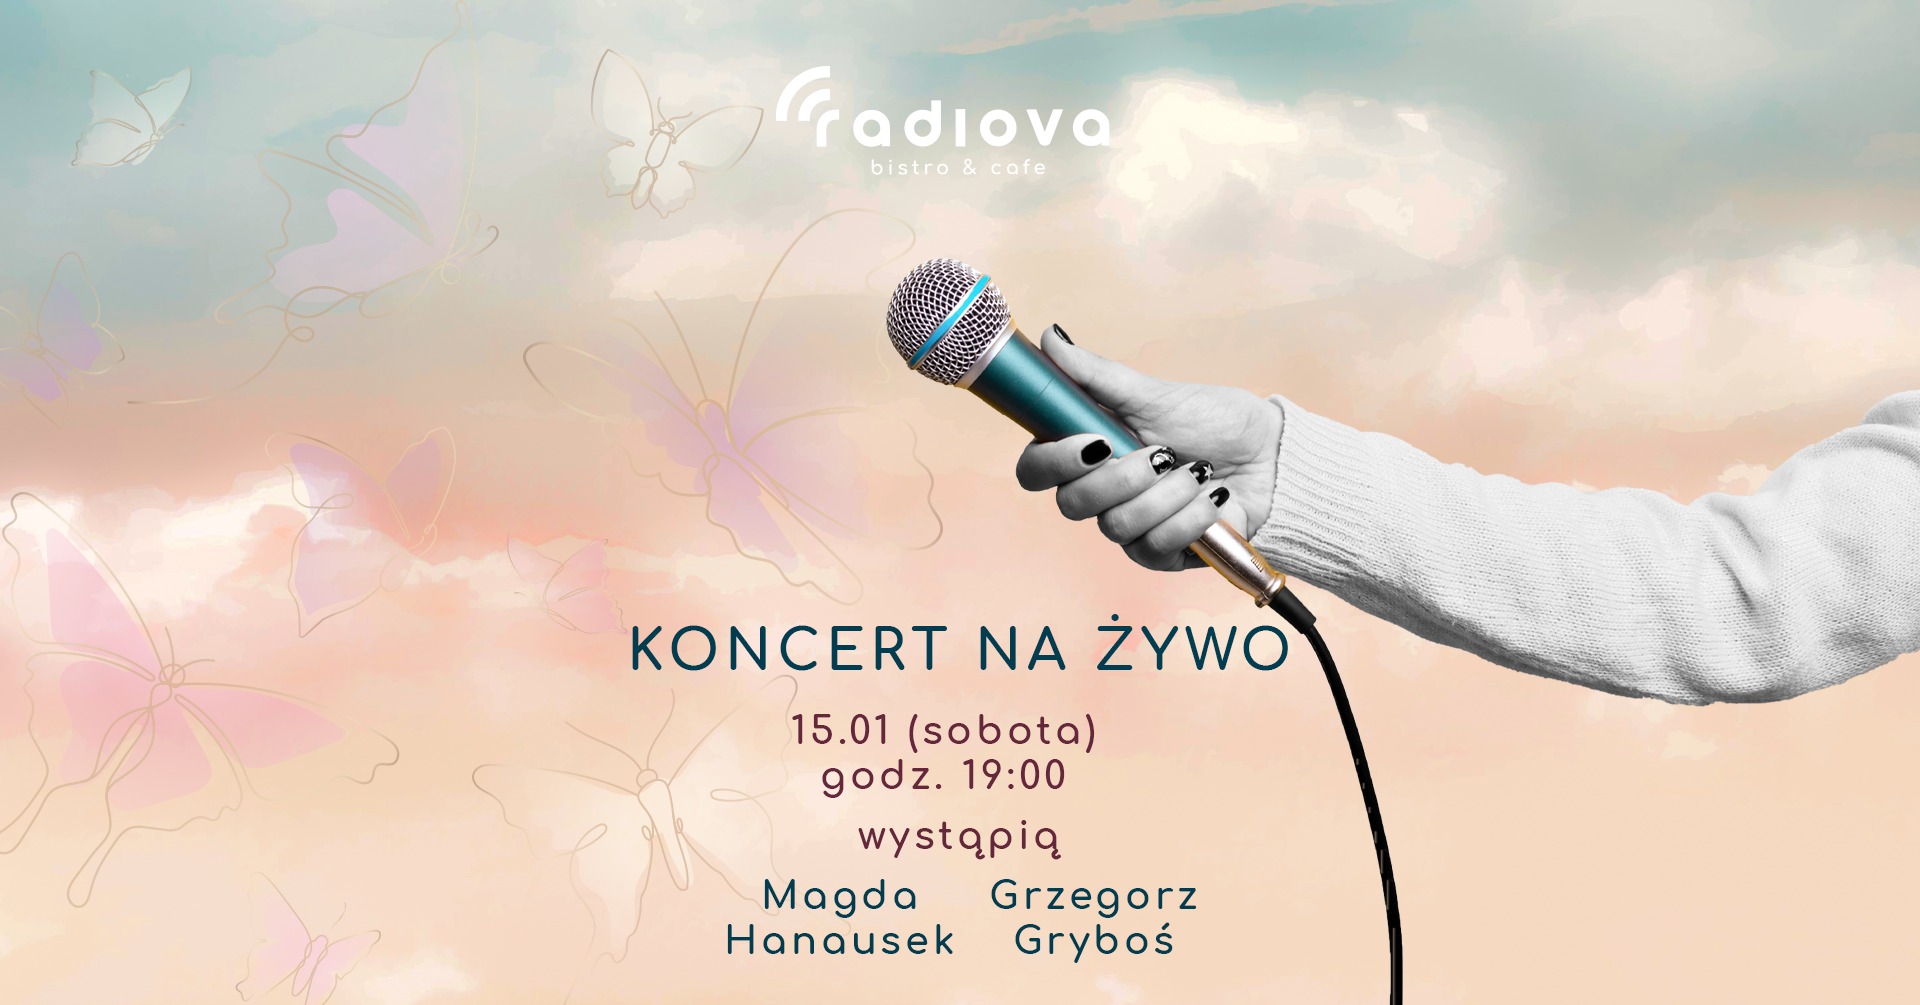 Koncert na żywo w Radiovej - Magda Hanausek oraz Grzegorz Gryboś